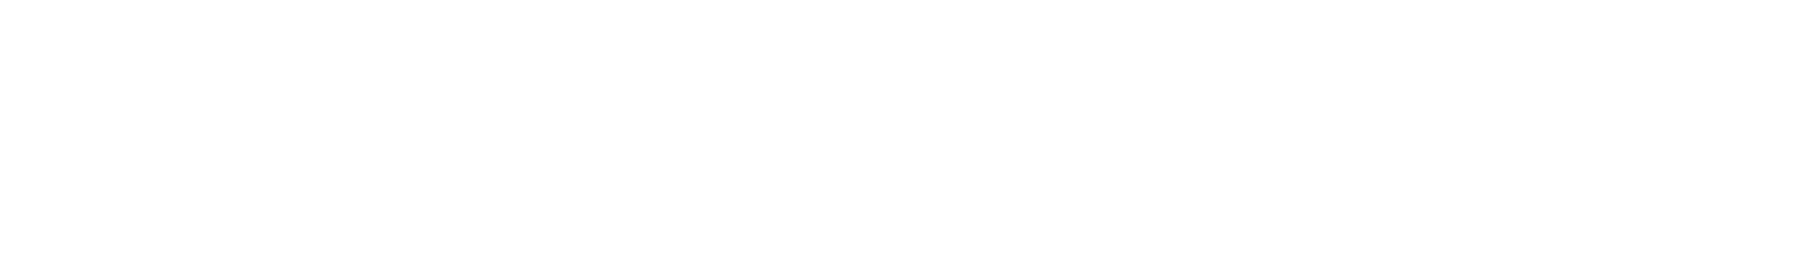 2024.10.5【SAT】 【関東エリア大会B】イオンモール春日部▶